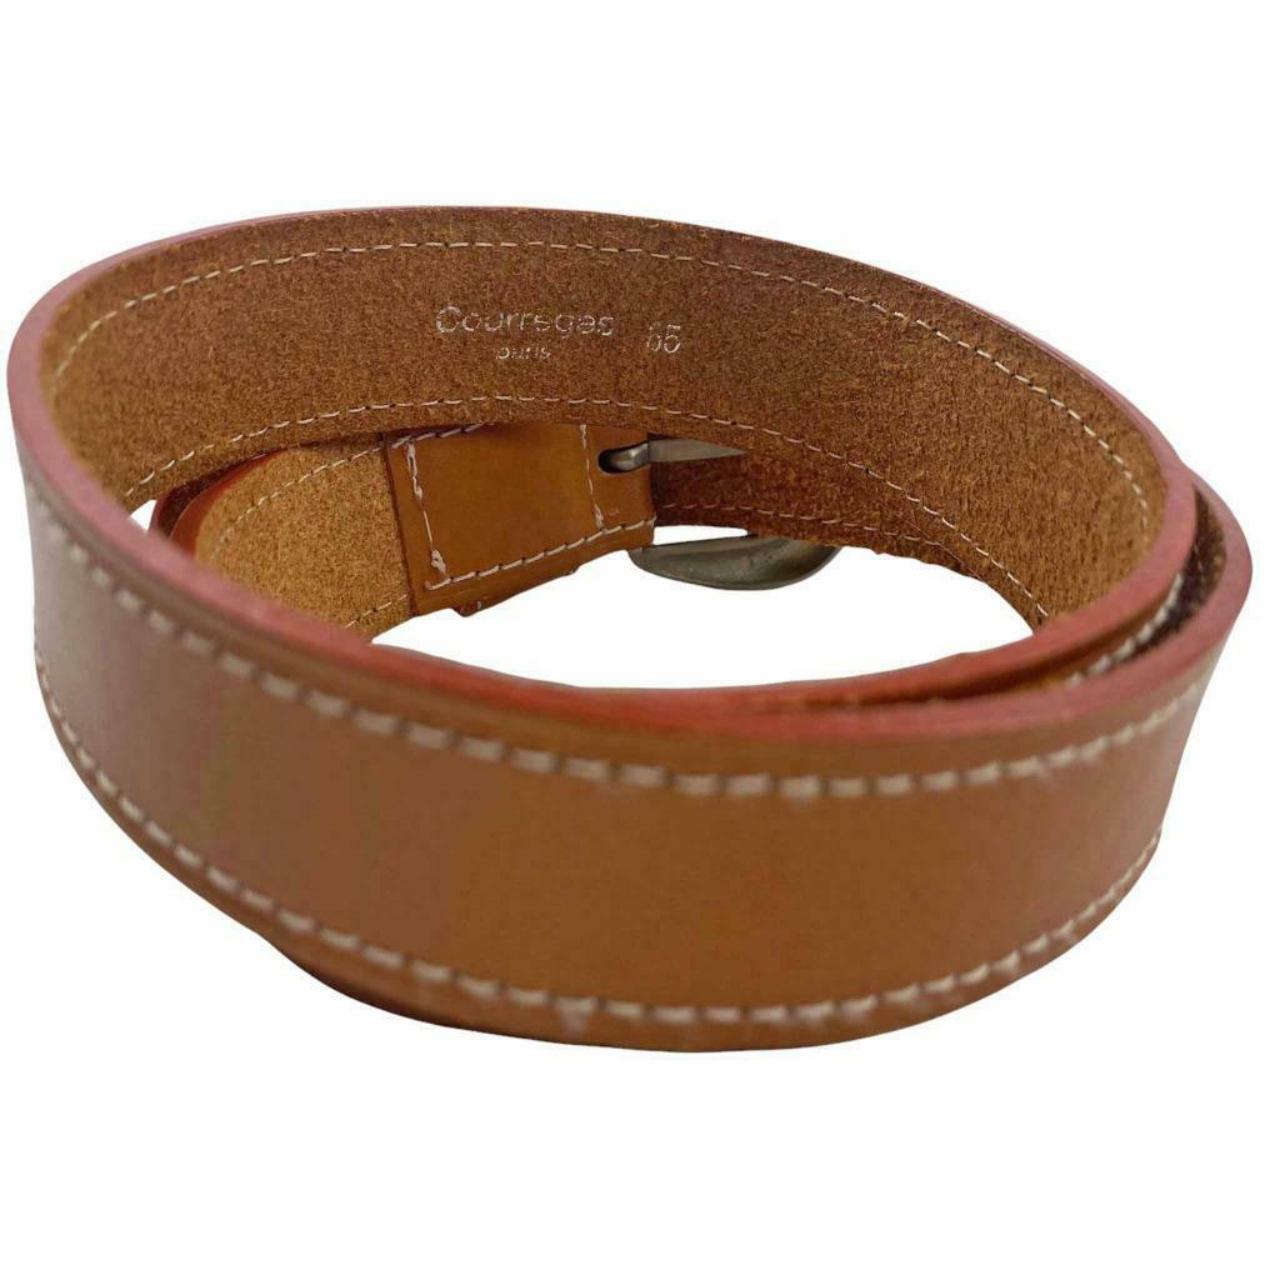 Product Image 3 - Women's COURREGES Paris leather belt.